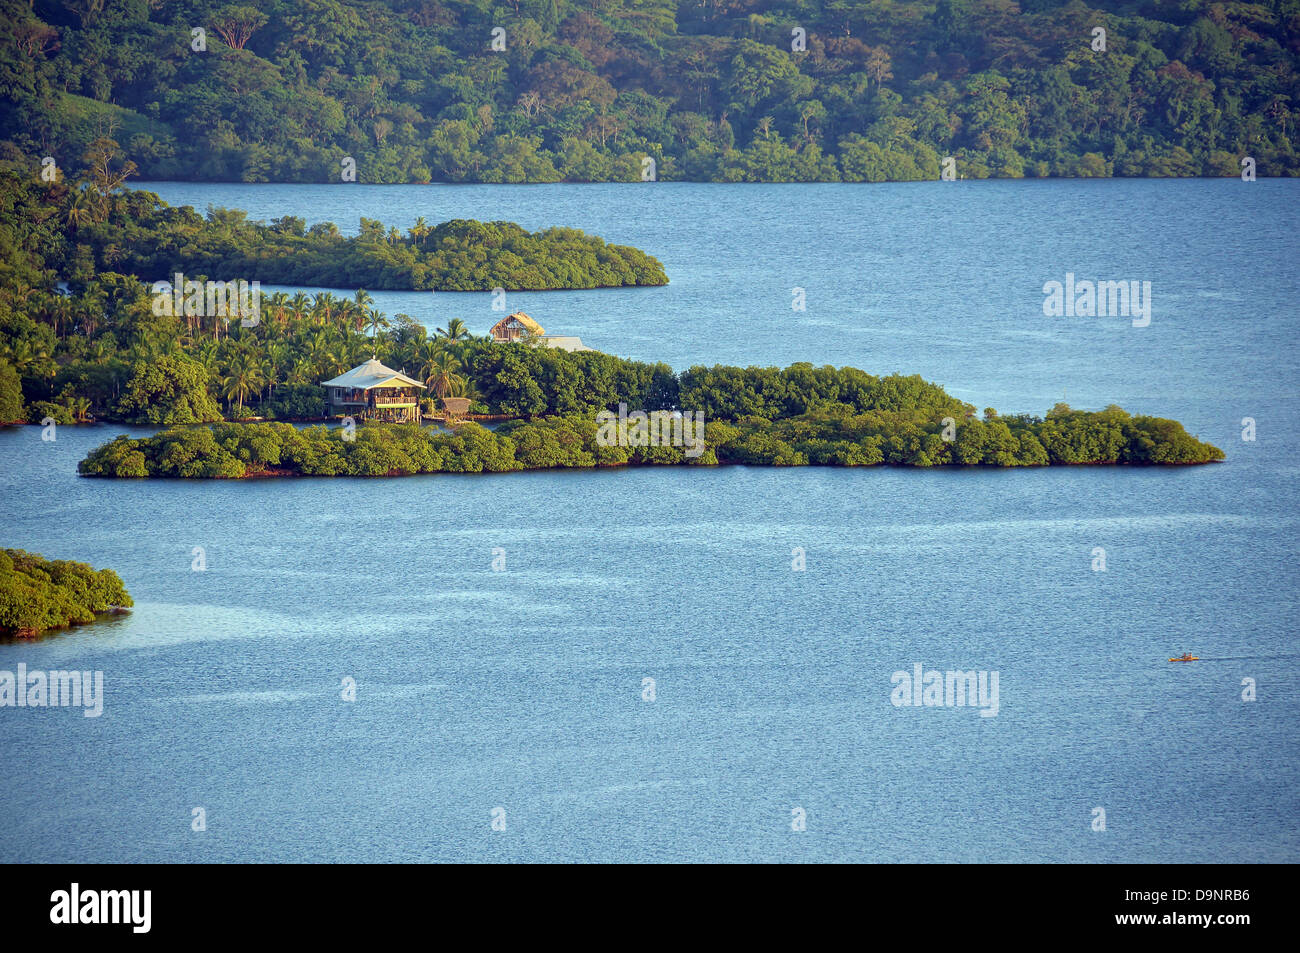 Luftaufnahme der tropischen Küste mit üppiger Vegetation und einem Haus, Inselgruppe von Bocas del Toro, Karibik, Panama, Mittelamerika Stockfoto